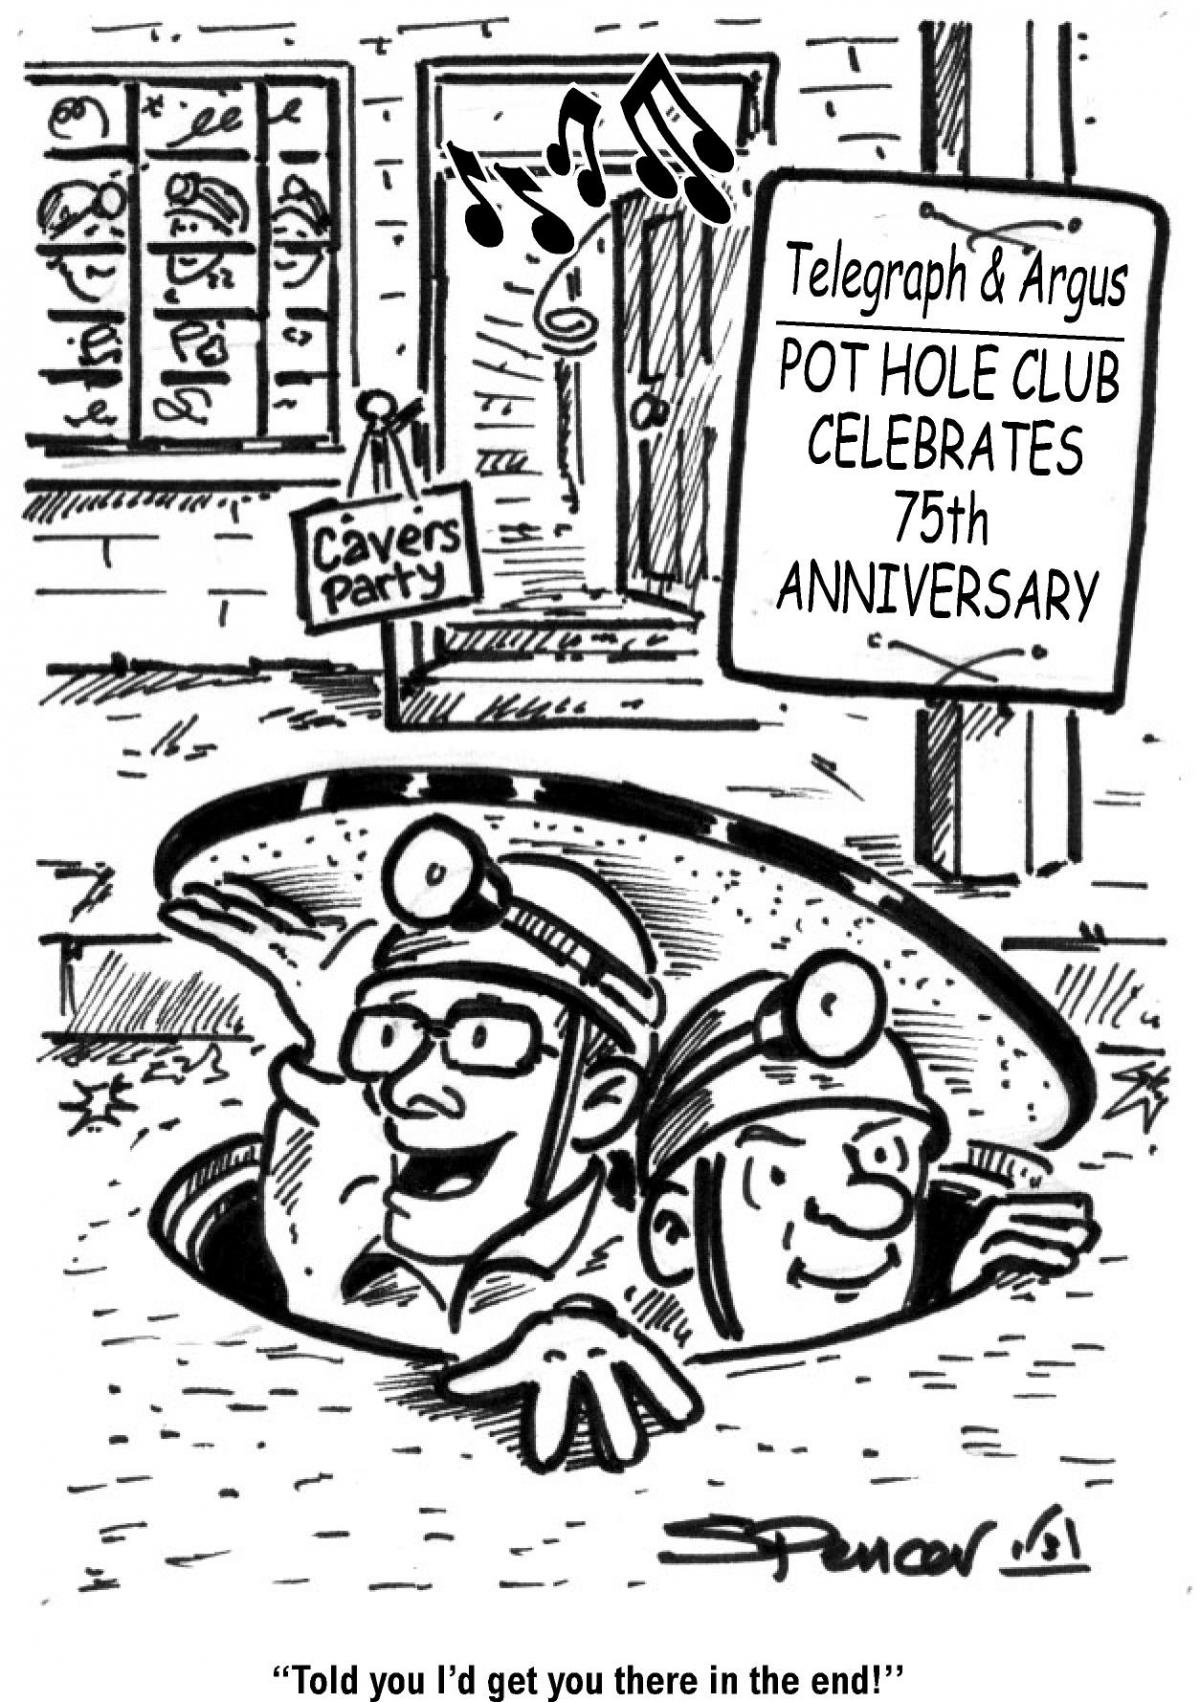 Potholers celebrate 75 years